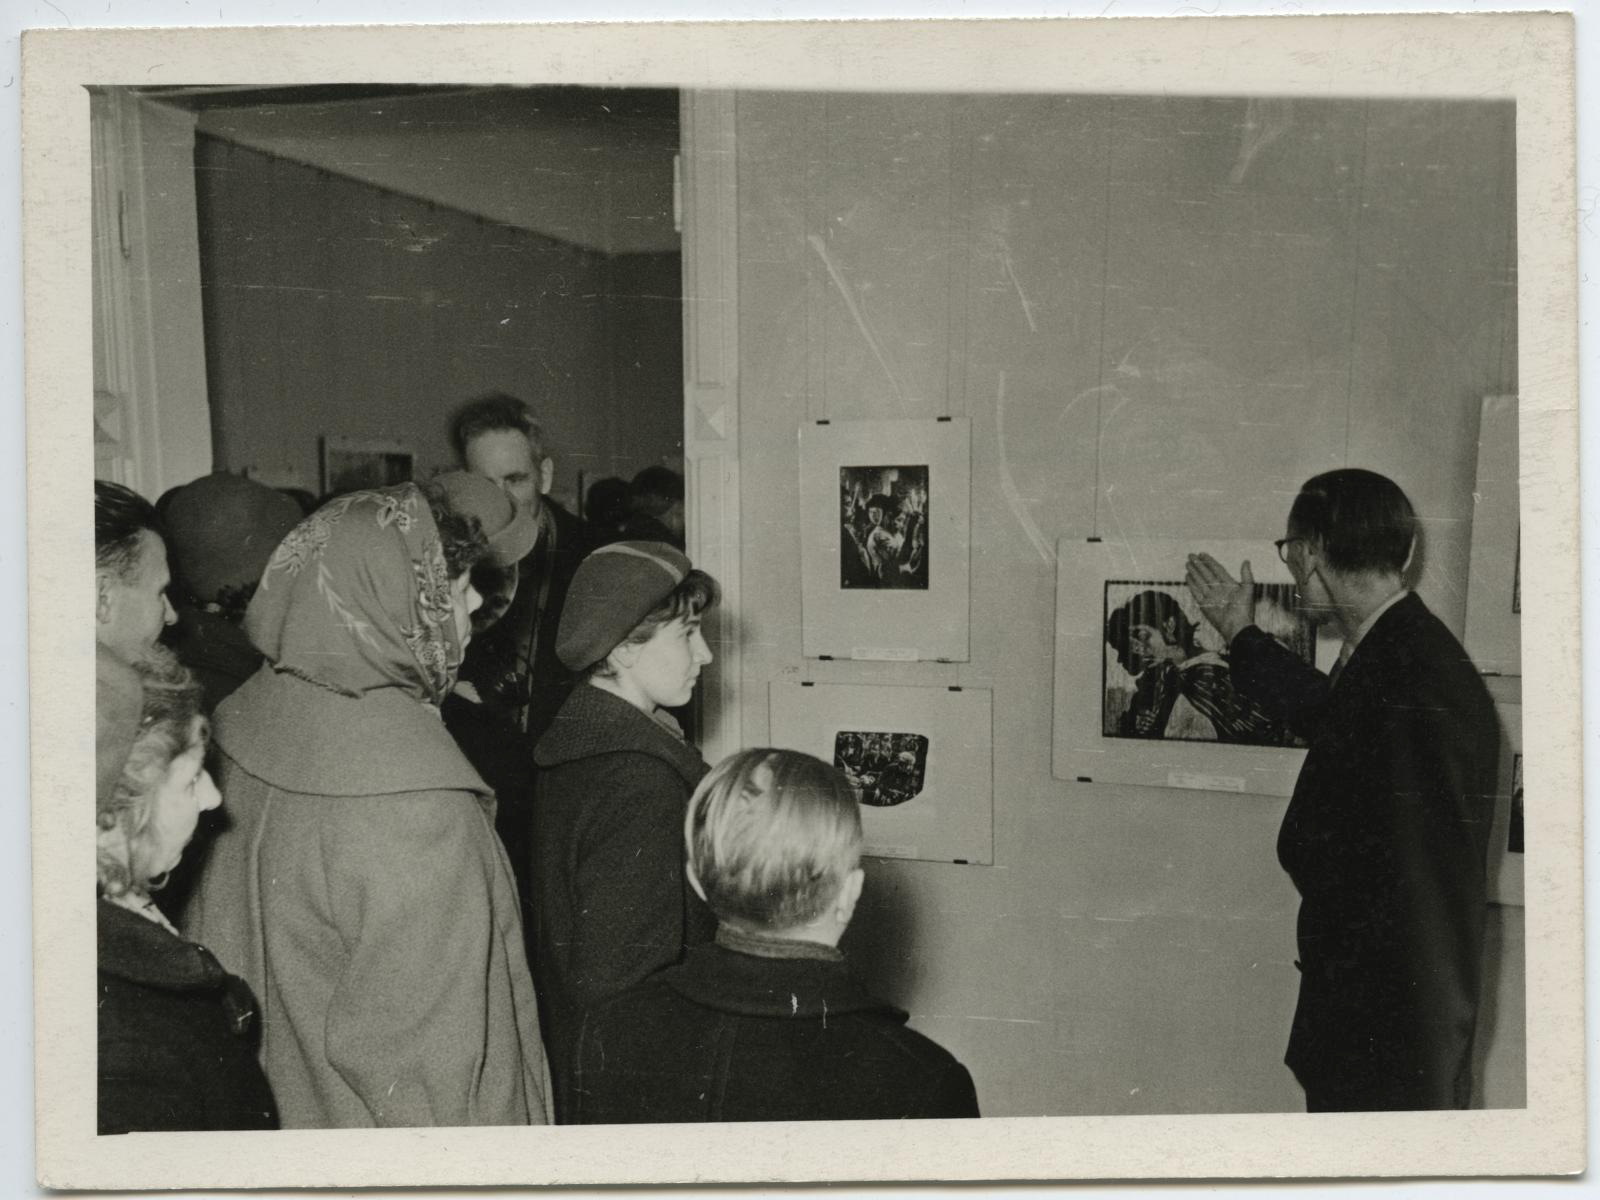 Kuuba graafika näitus (15. apr. - 24. mai 1961). Kunstiteadlane V. Erm juhib ekskursiooni